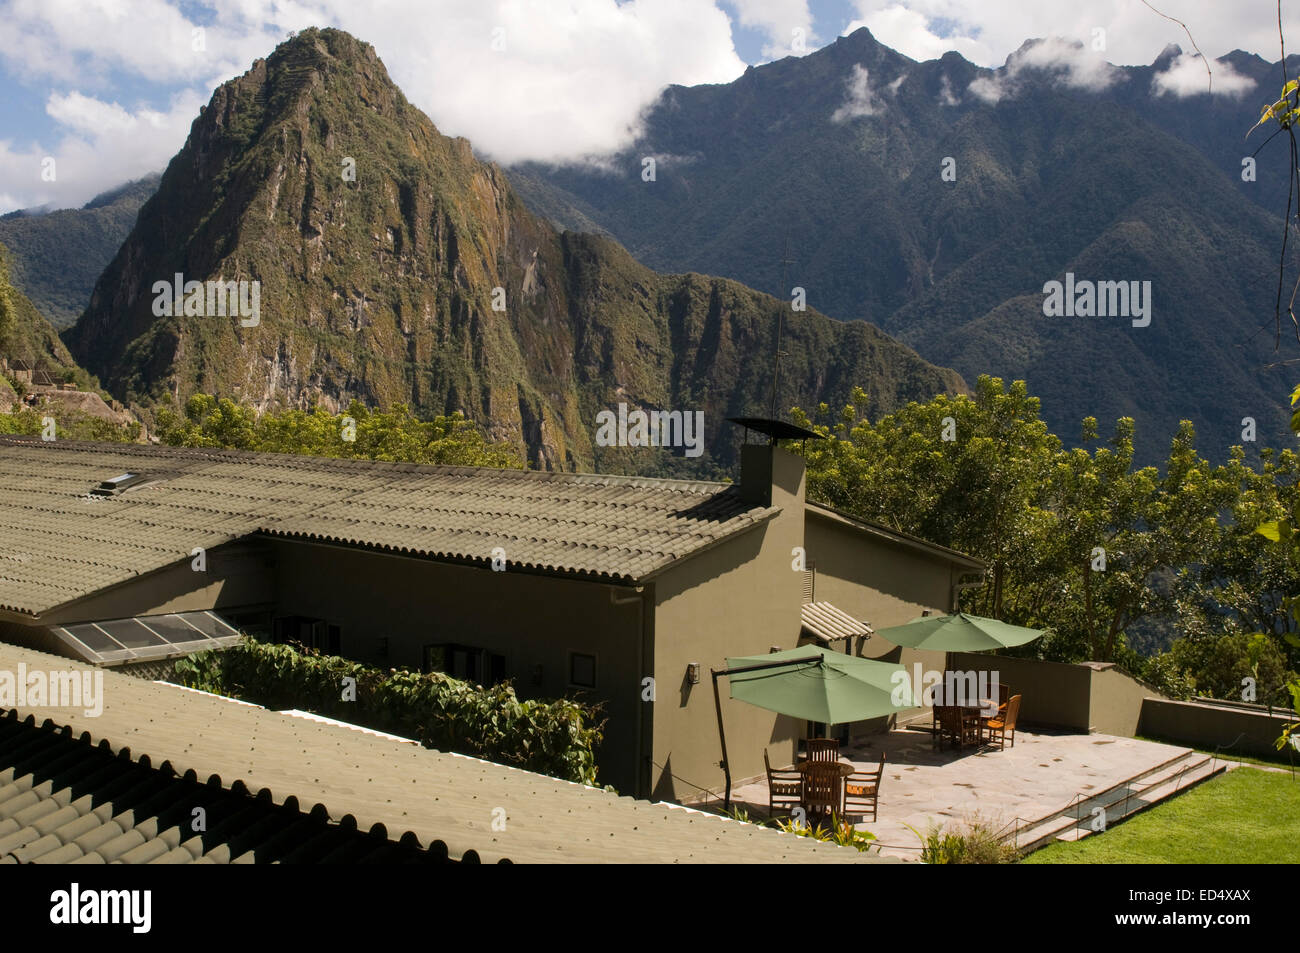 Sanctuary Lodge, A Belmond Hotel- Deluxe Machu Picchu, Peru Hotels